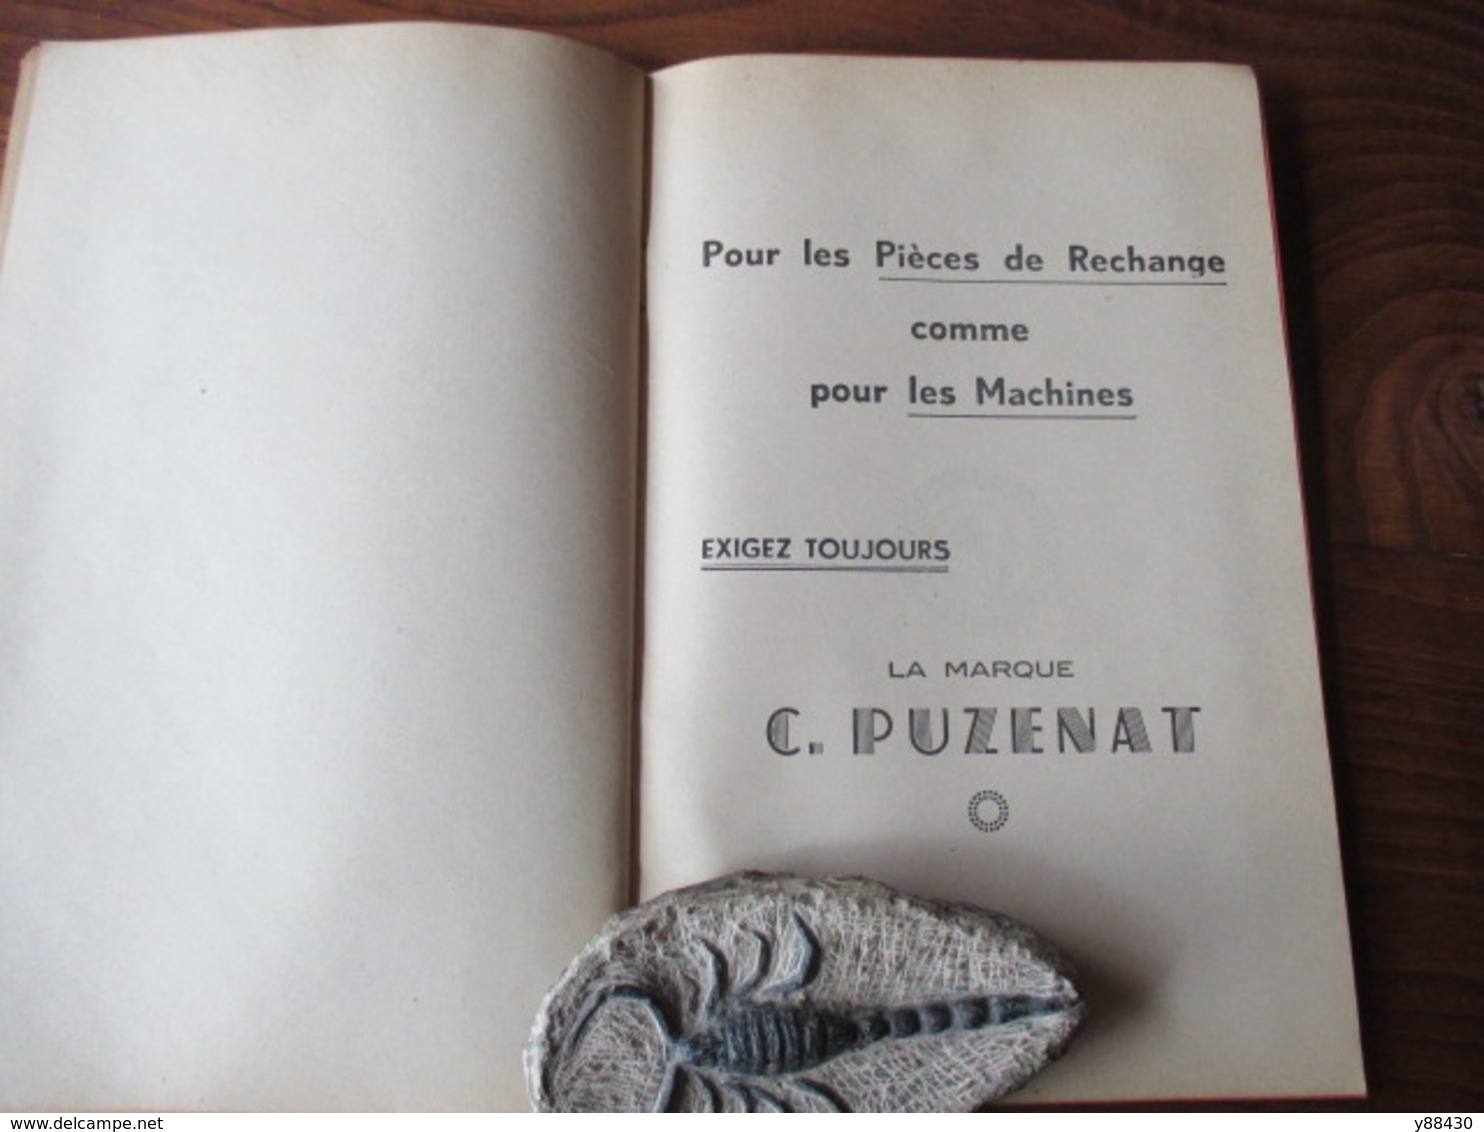 Livret pour PIECES DE RECHANGES  machines agricole - Ets. C. PUZENAT à BOURBON LANCY - année 1952 - 52 pages - 21 photos